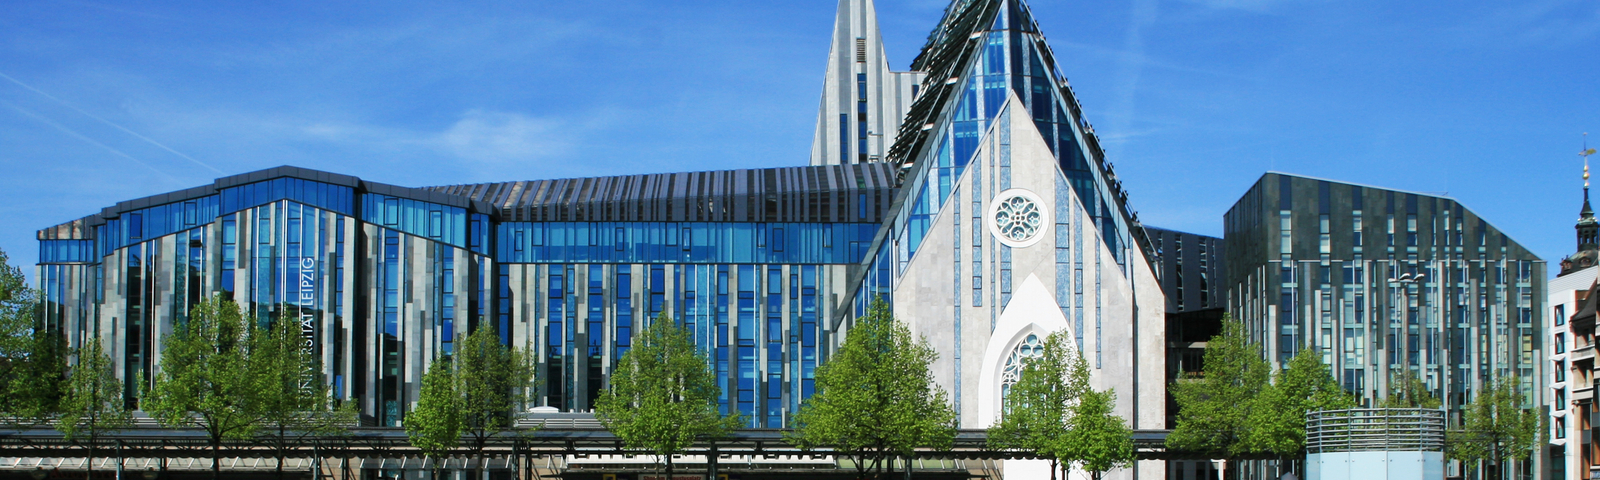 Referentie - Referenzbericht: Augustkirche/ Universität Leipzig, Leipzig